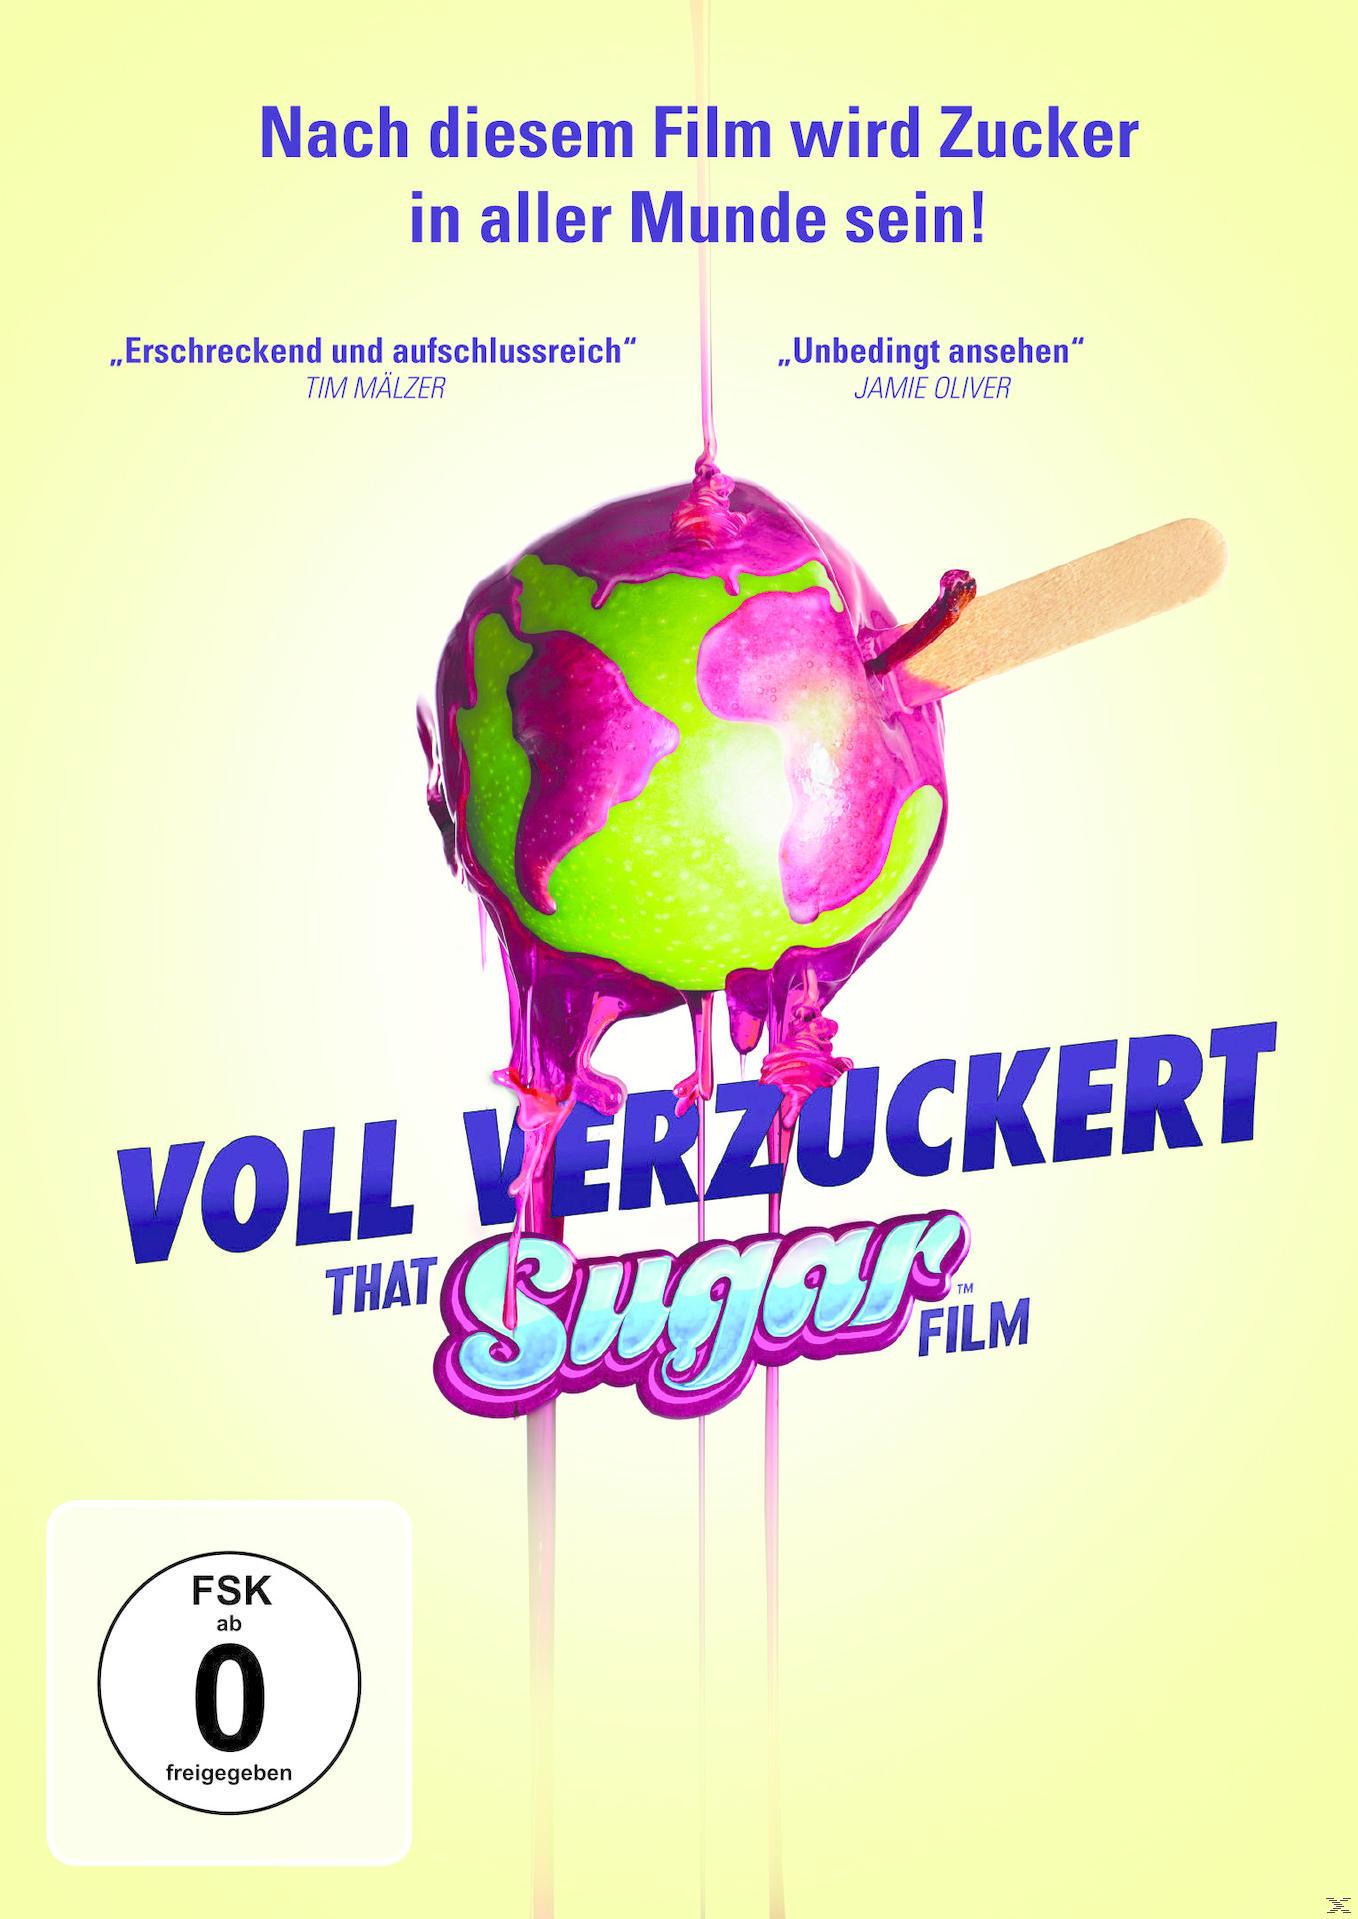 Voll DVD That - Sugar verzuckert Film